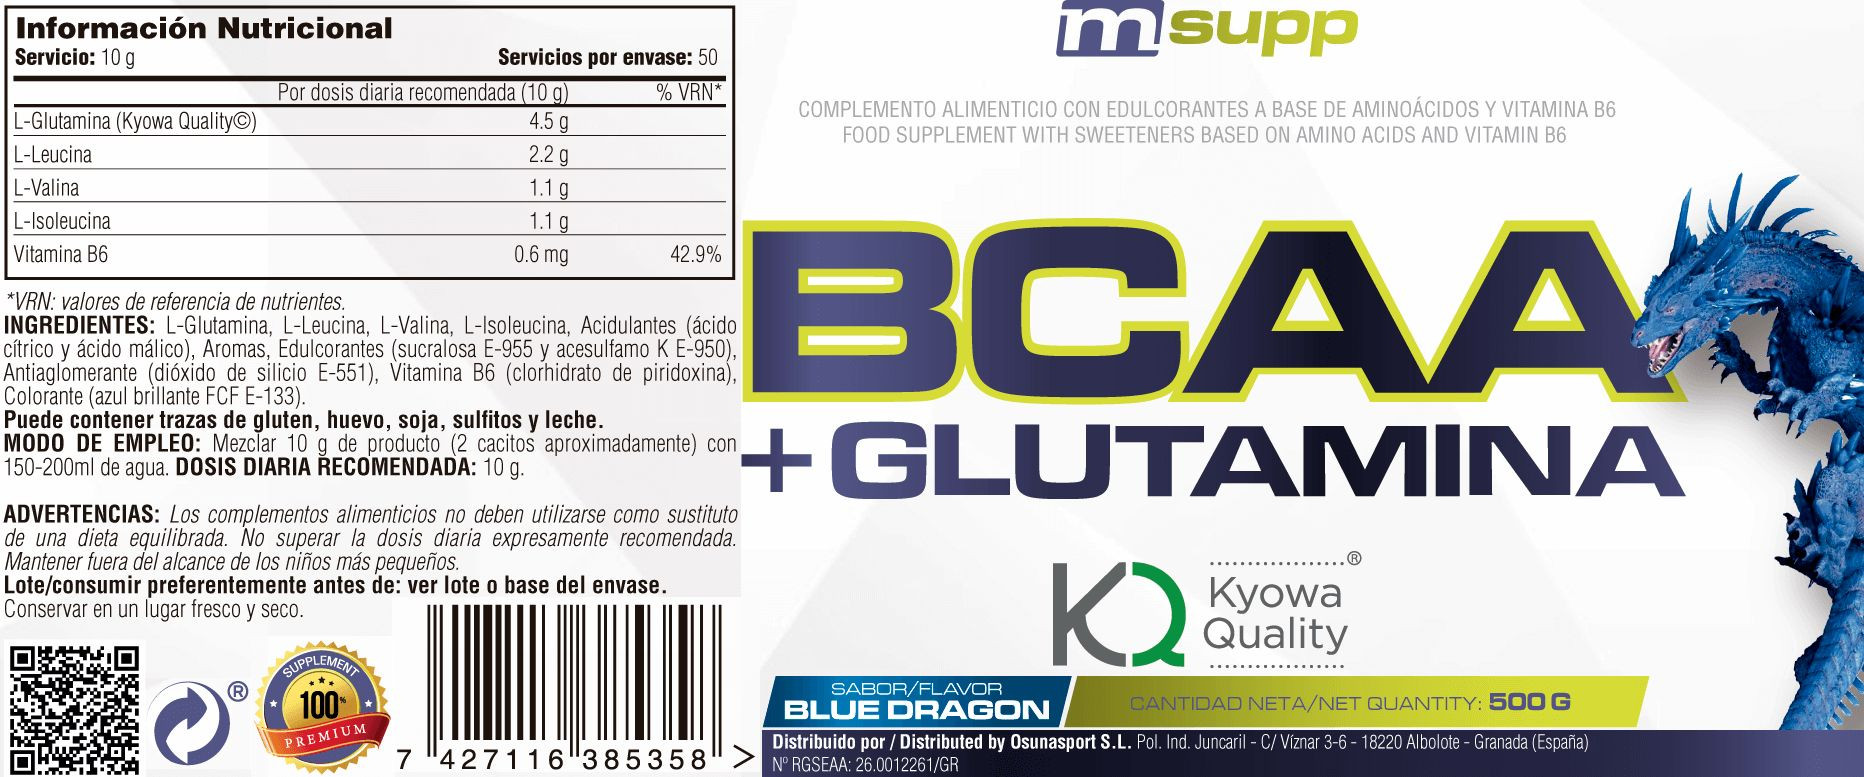 L-glutamina Kyowa + Bcaa - 500g De Mm Supplements Sabor Blue Dragon  MKP